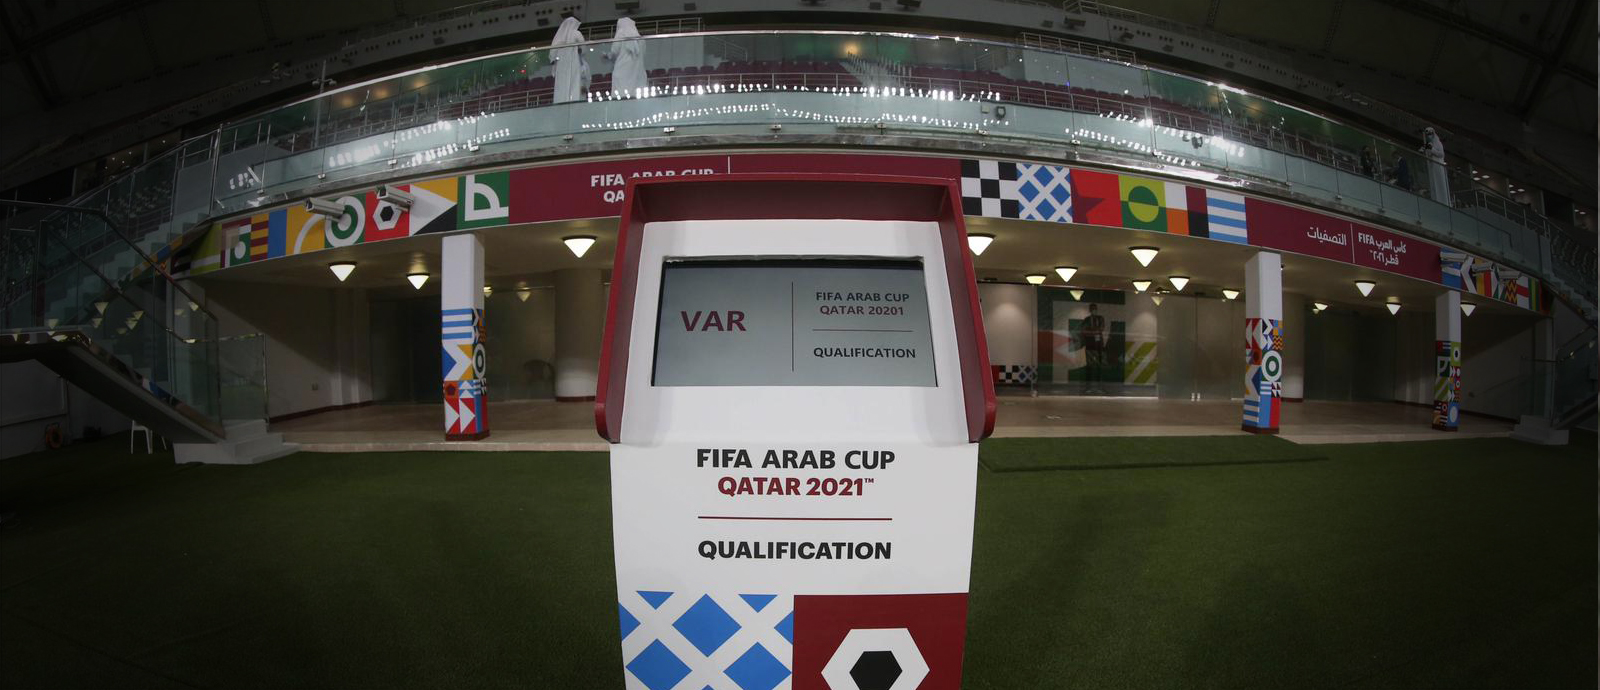 تصفيات كأس العرب تكرس مكانة الدوحة كملاذ آمن لكرة القدم